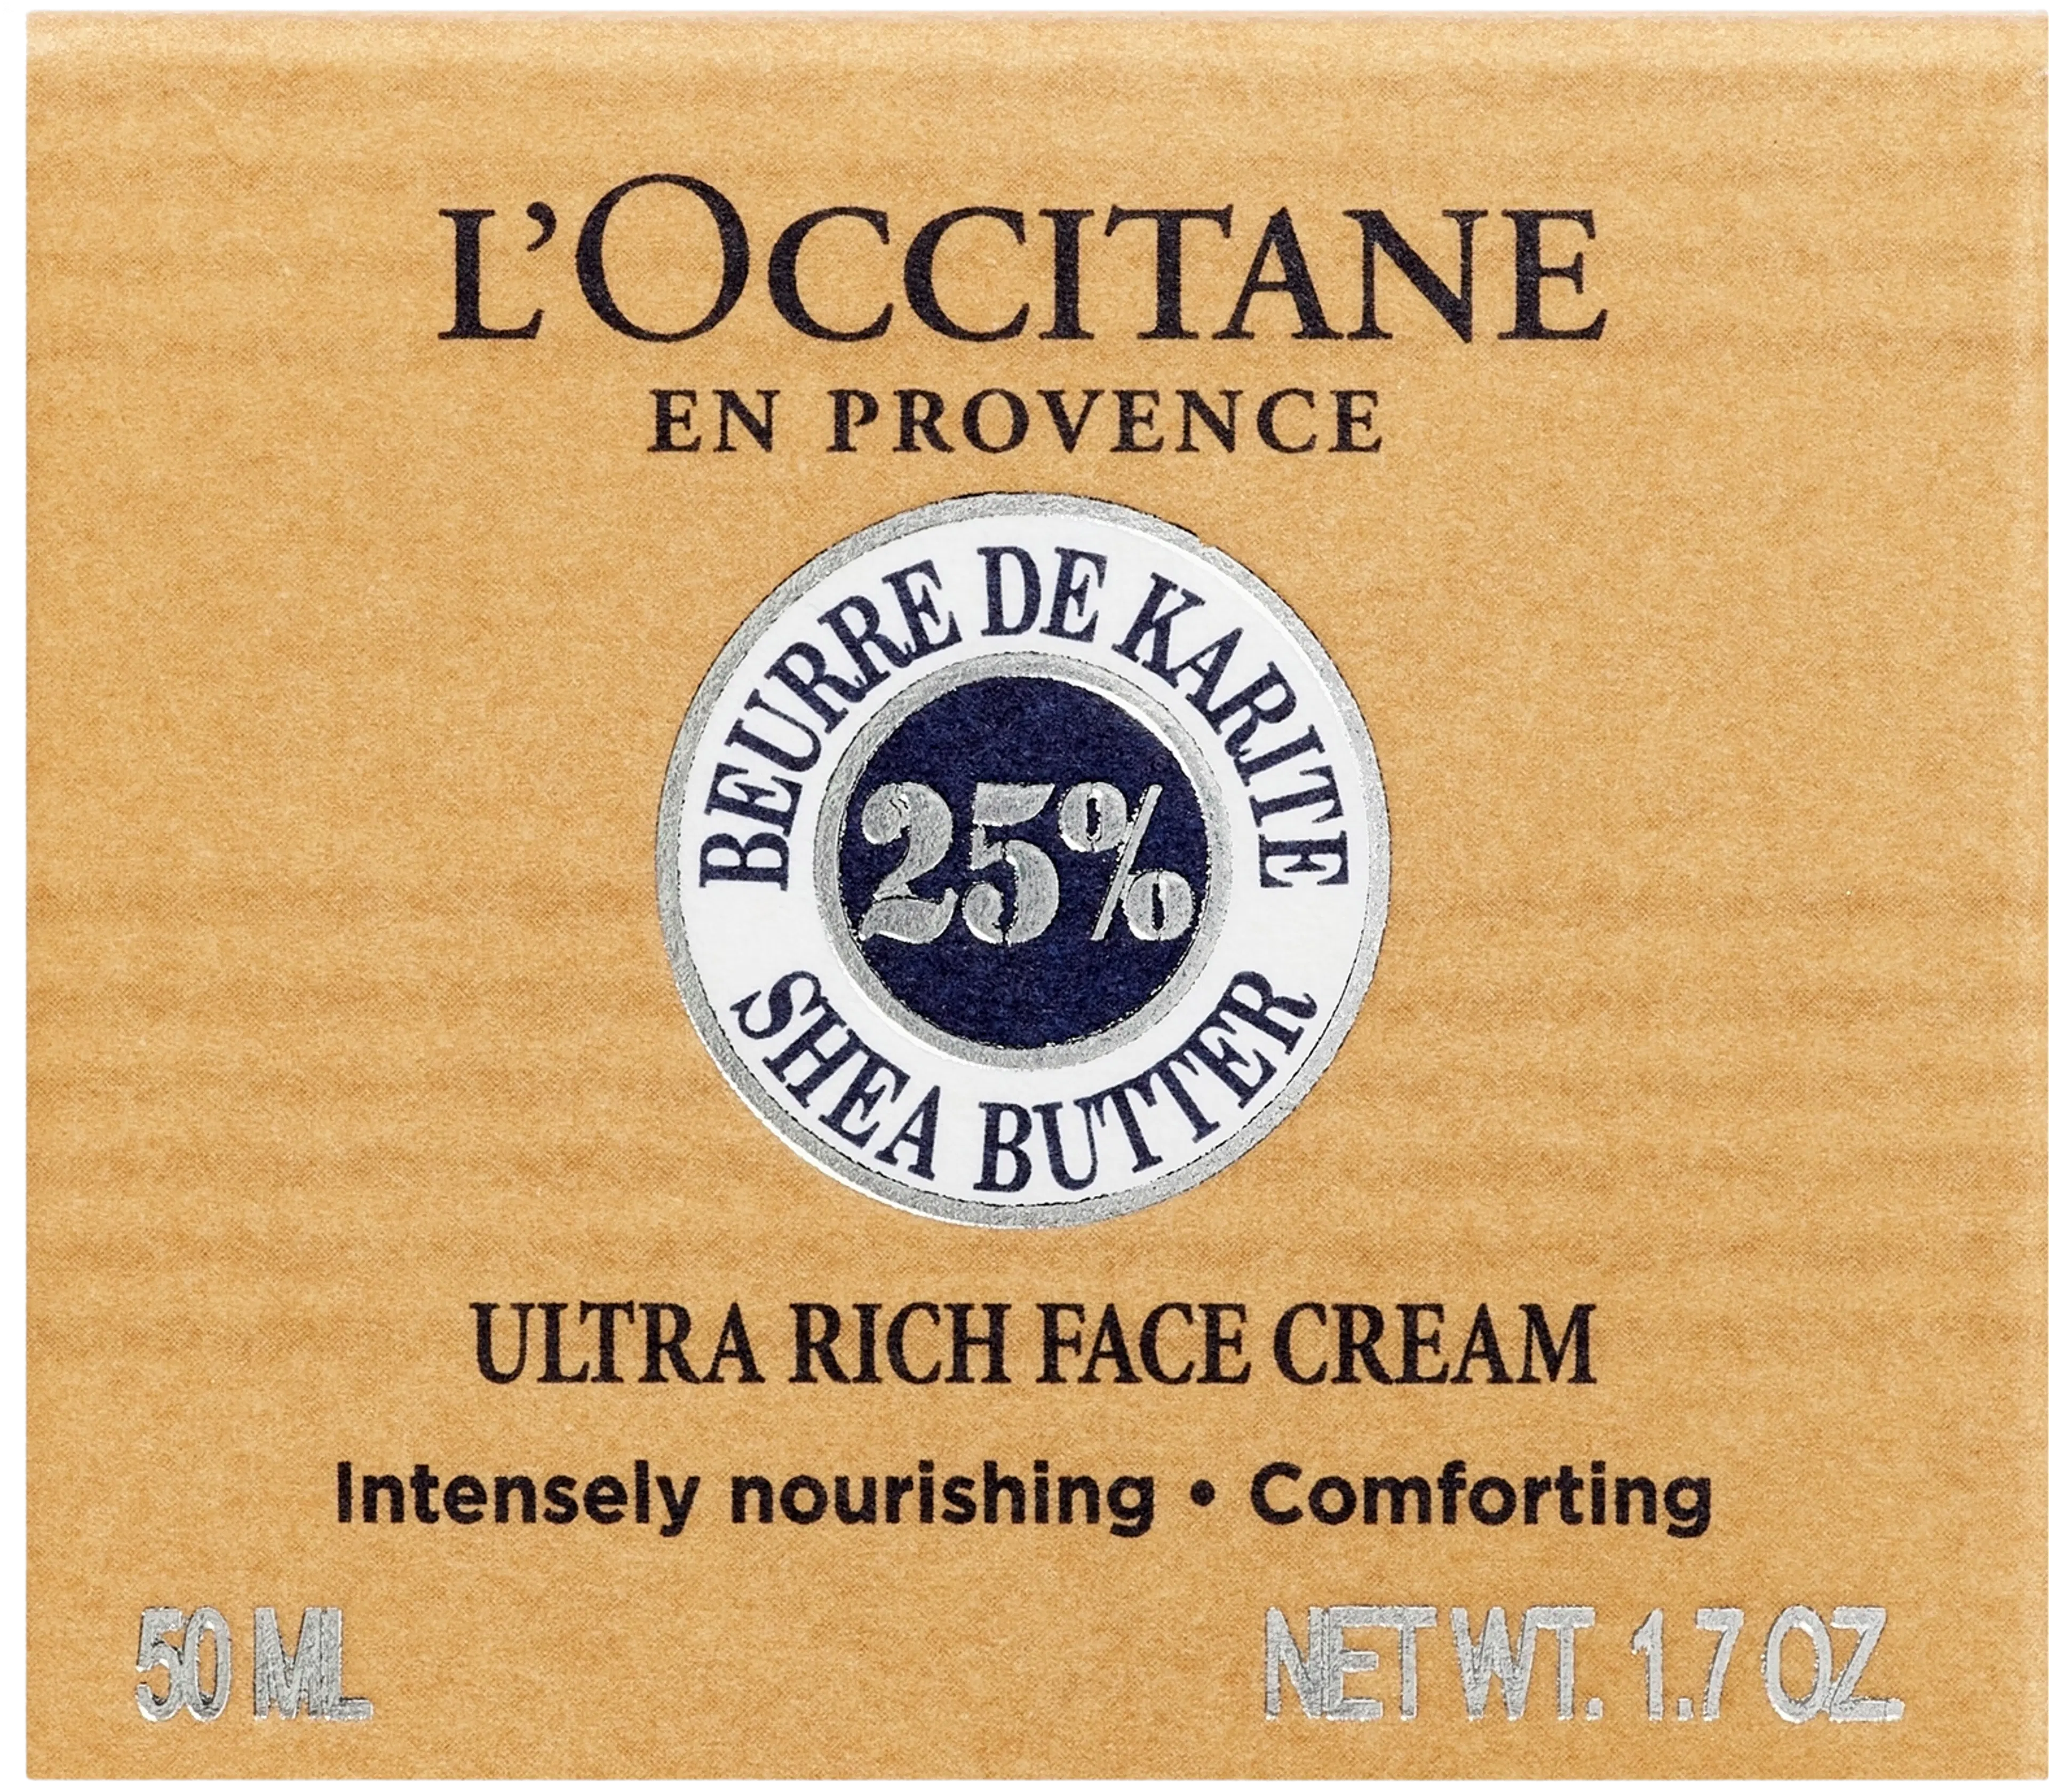 L'Occitane Shea Face Rich Cream kasvovoide 50 ml